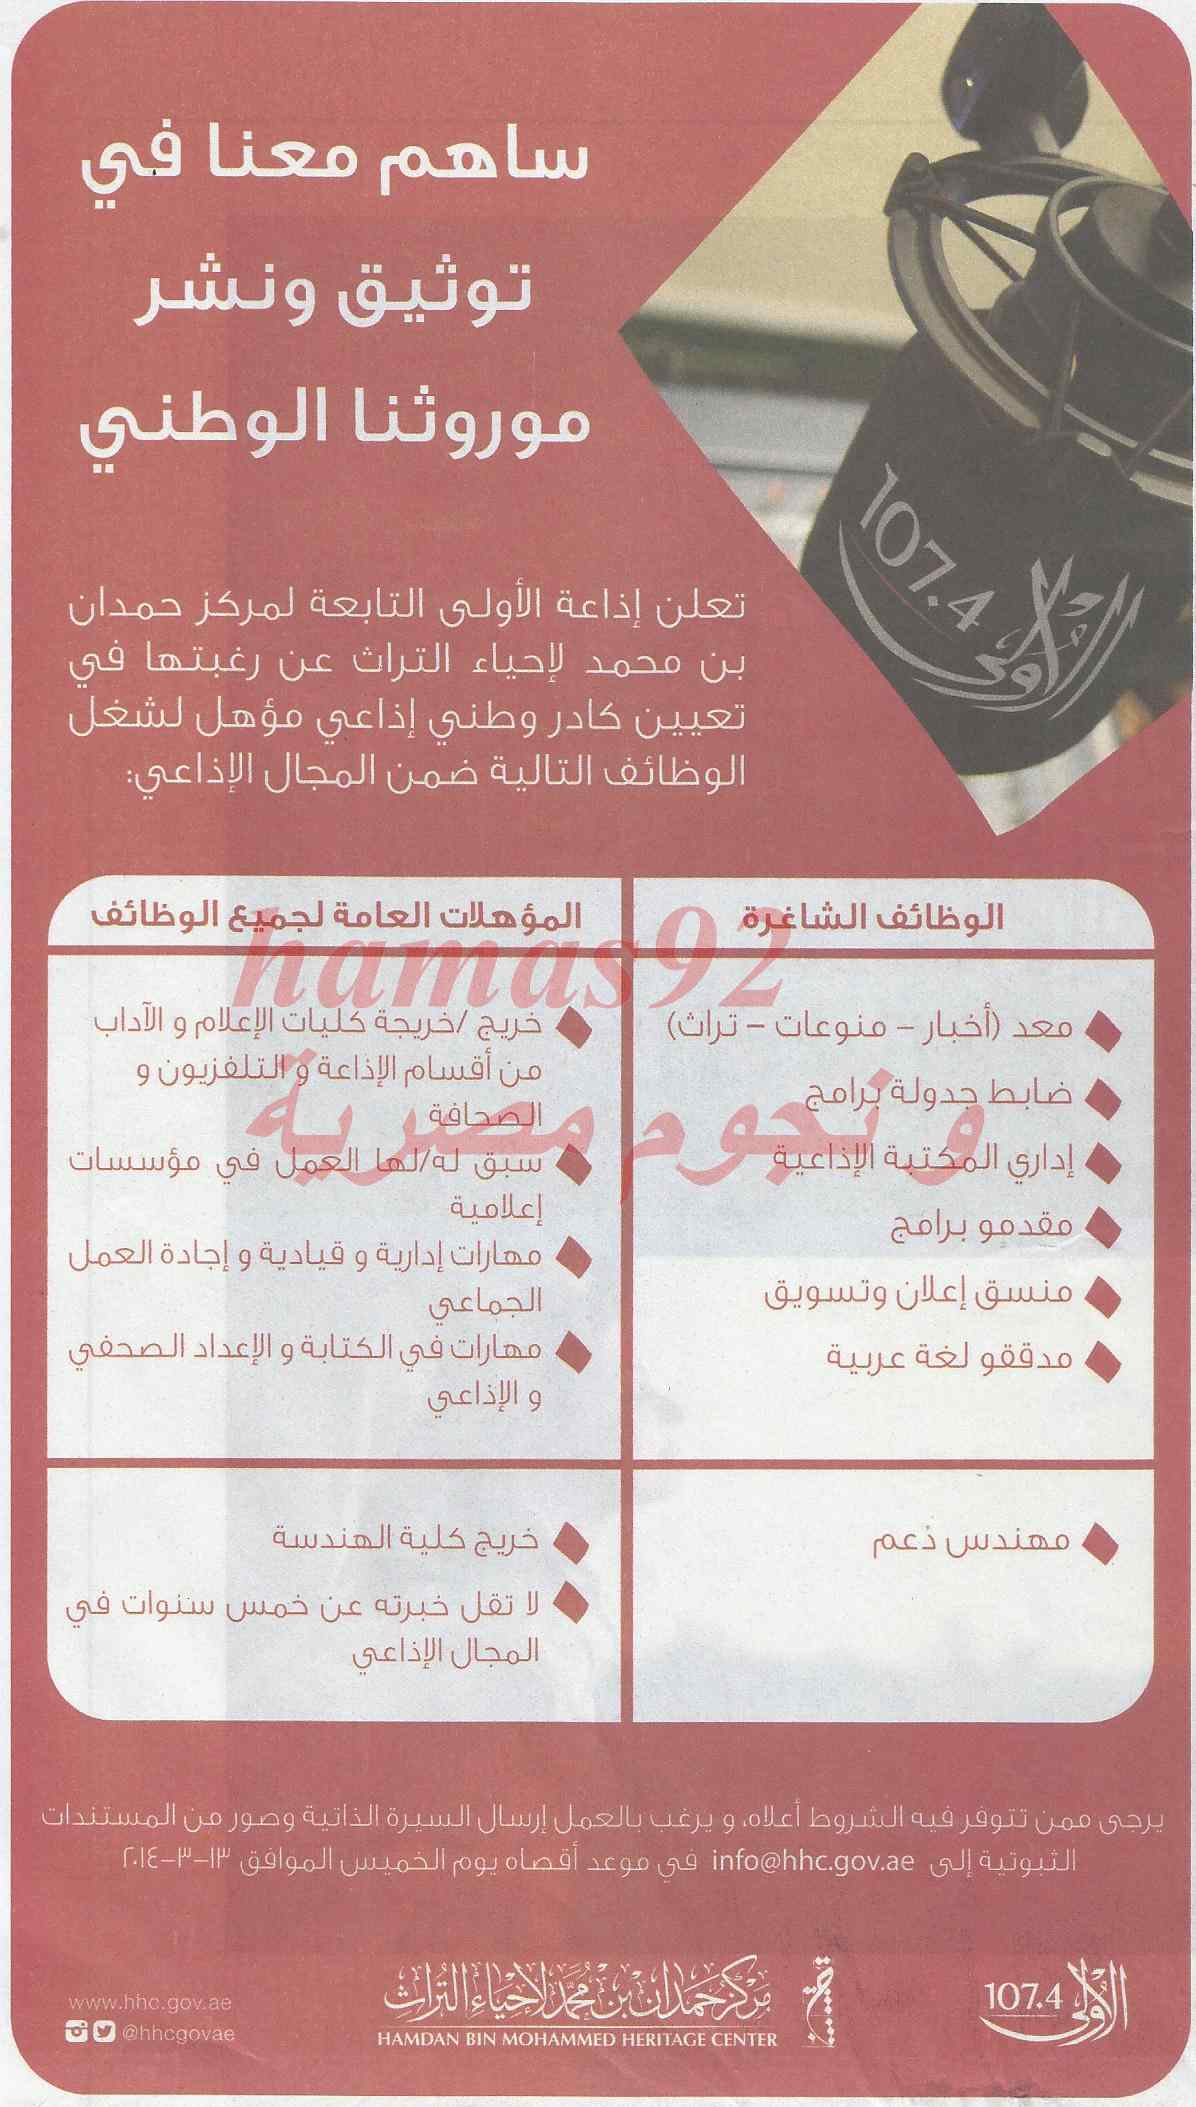 وظائف جريدة الخليج الامارات اليوم الجمعة 21-2-2014 , وظائف خالية في الامارات اليوم 21 فبراير 2014